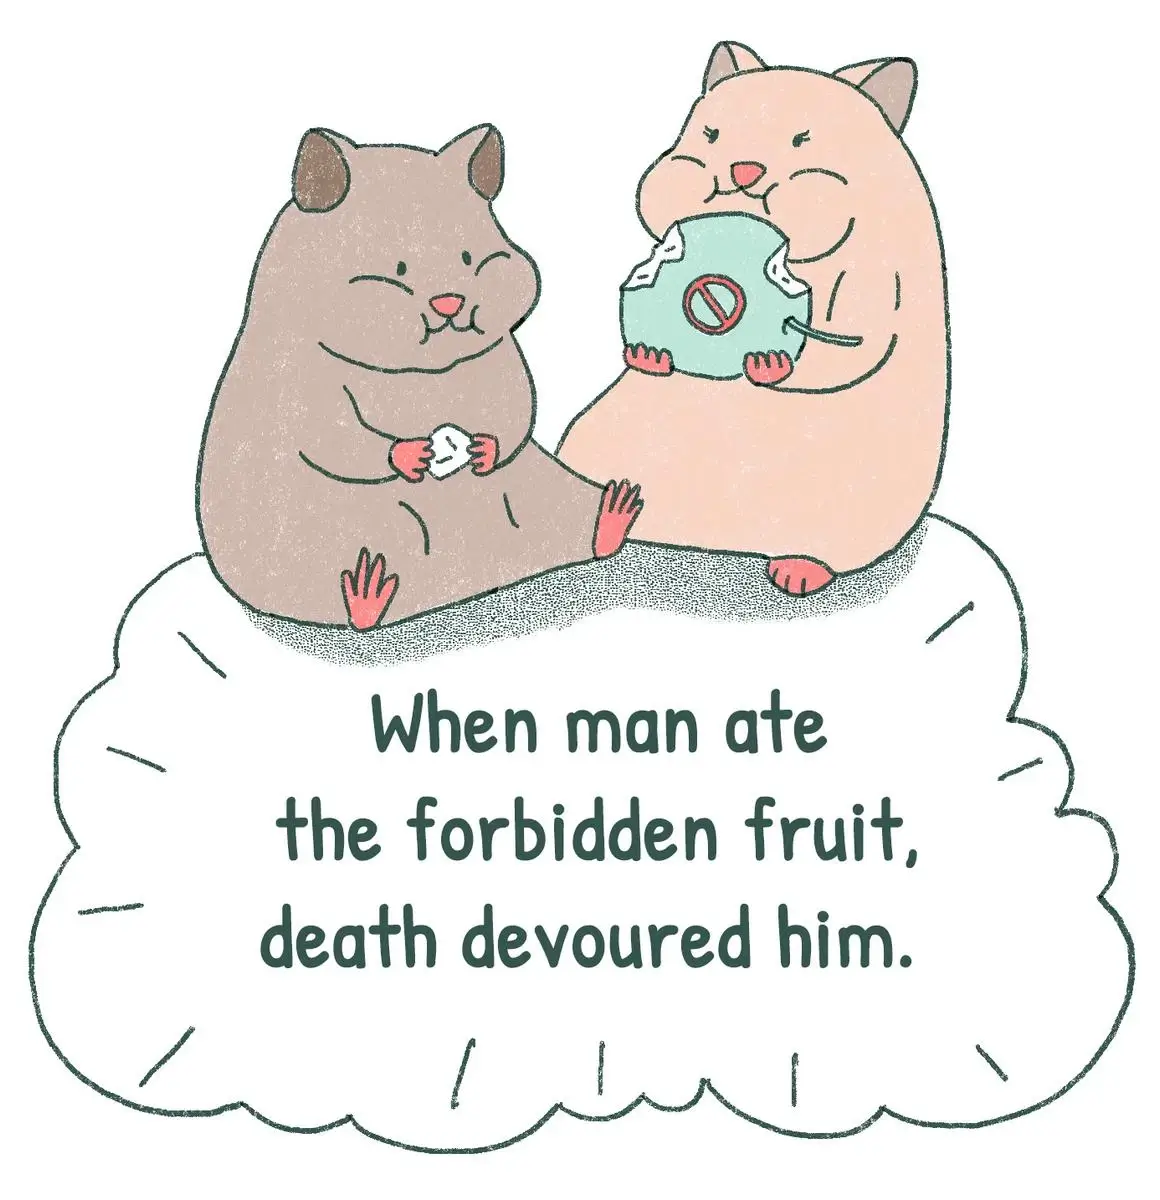 When man ate the forbidden fruit, death devoured him.